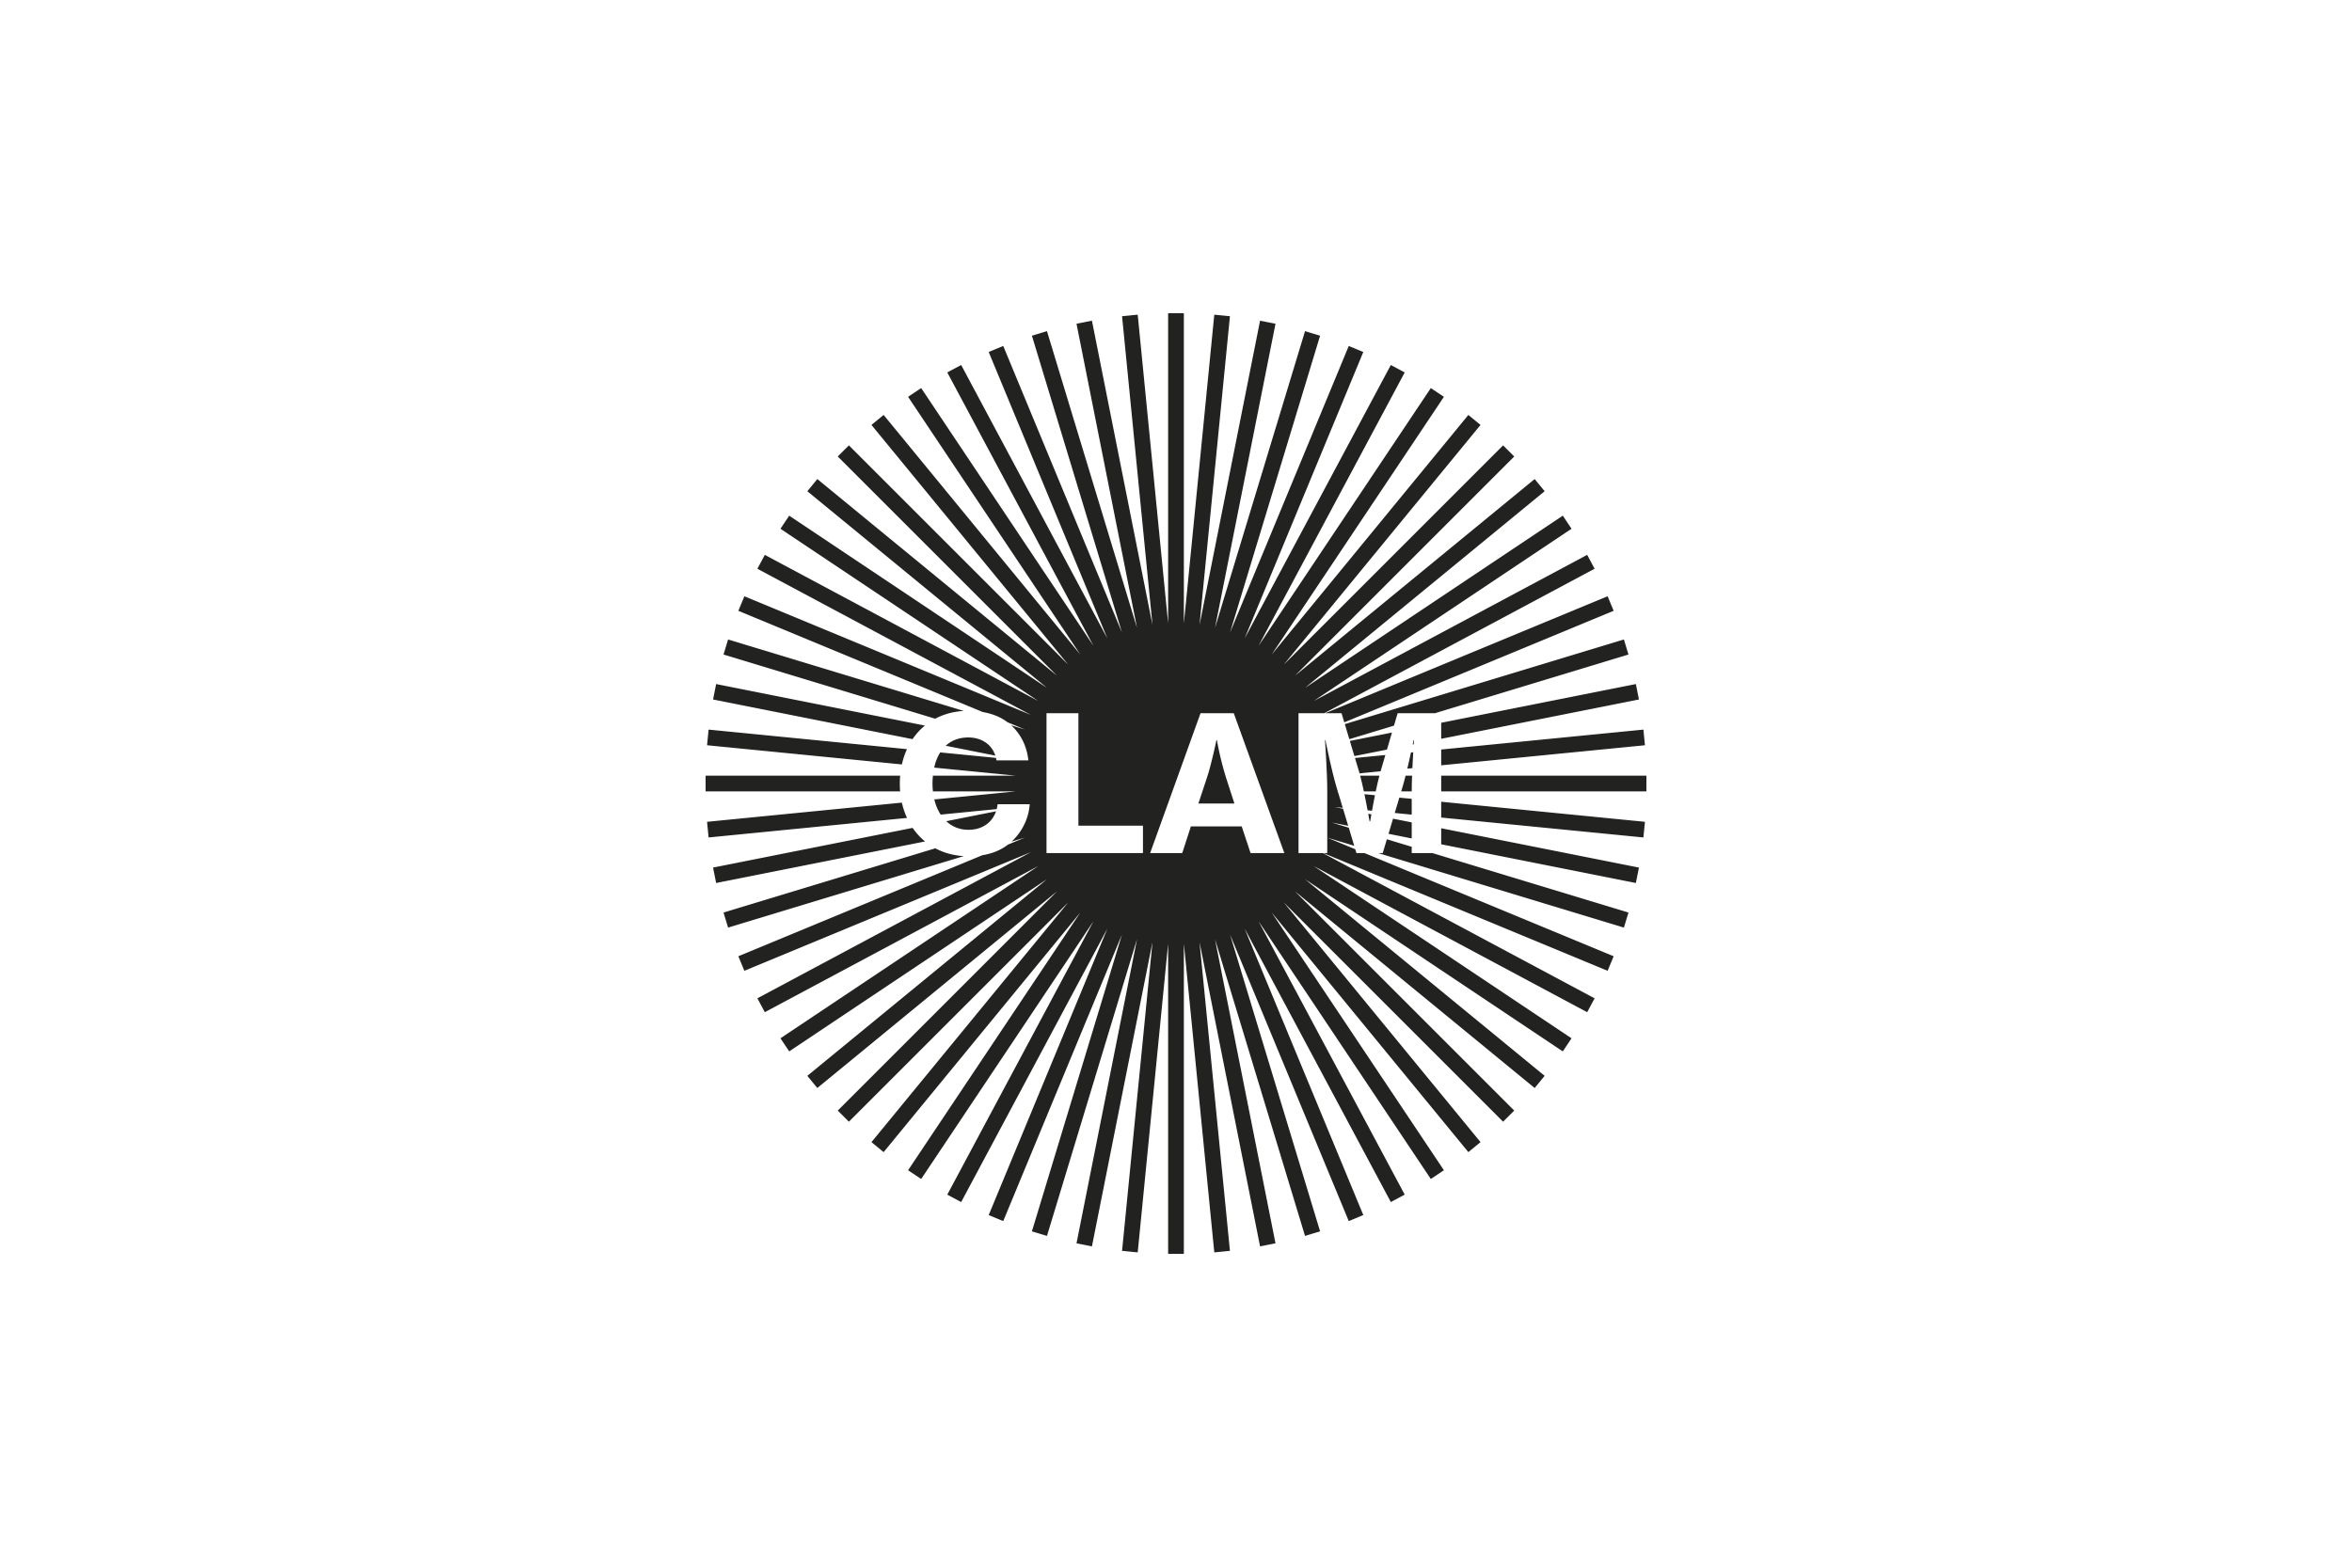 clam1